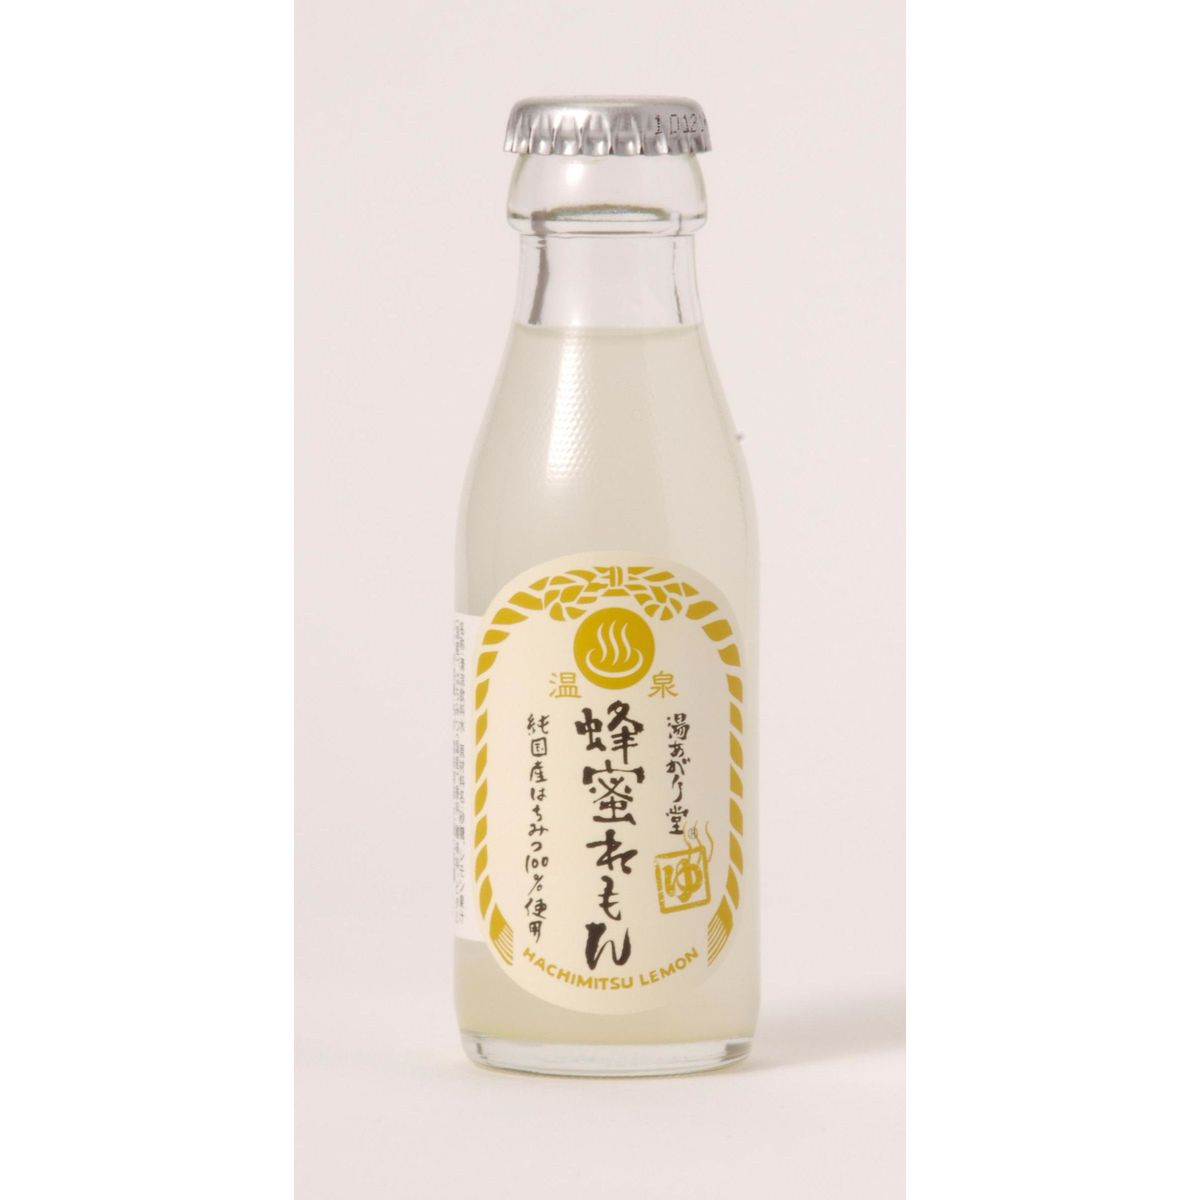 【48個入リ】友桝飲料 湯アガリ堂 蜂蜜レモン 瓶 95ml